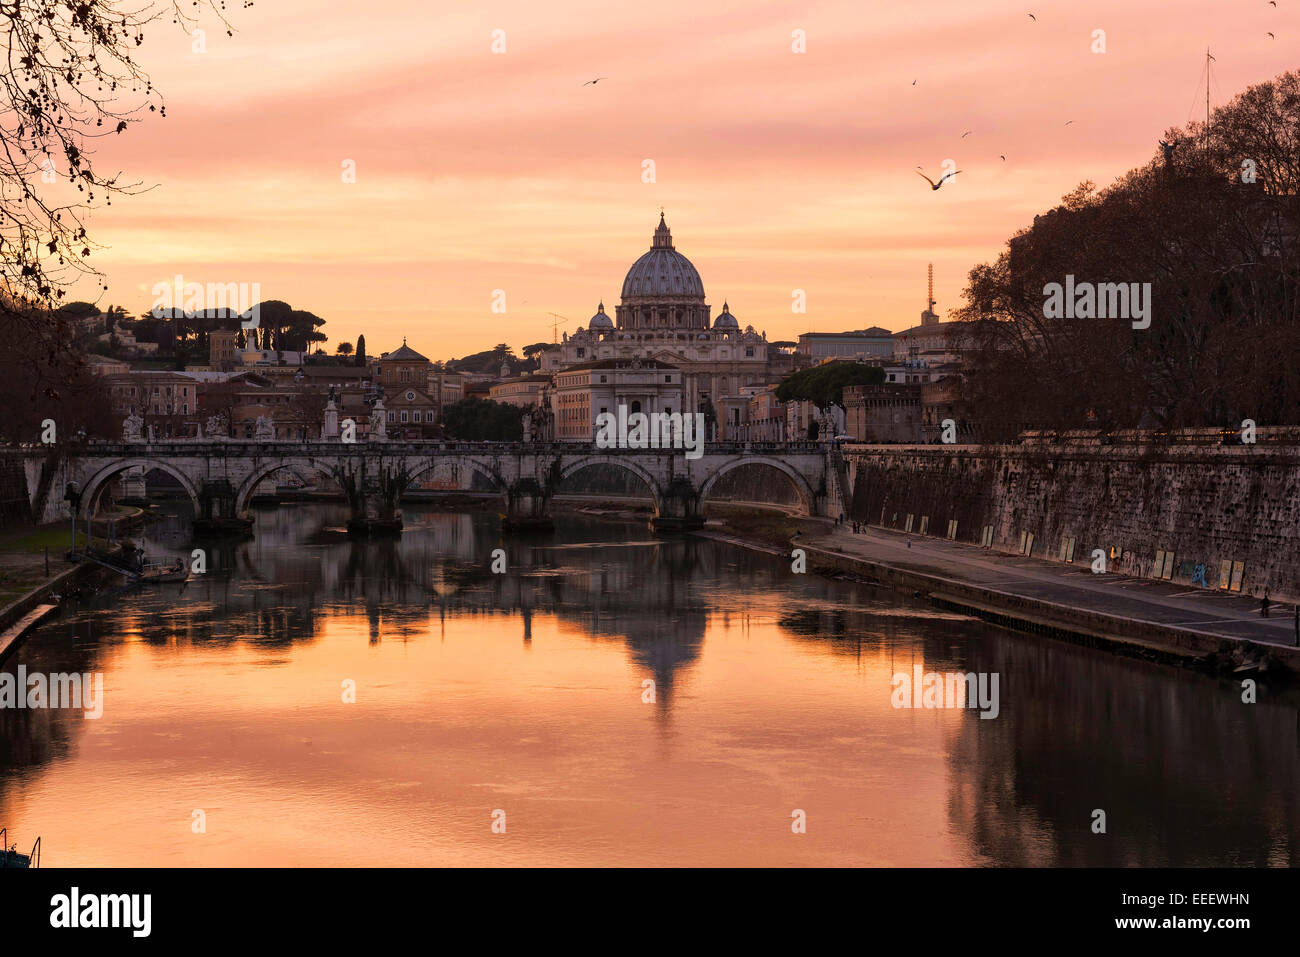 Roma, Hauptstadt Italiens. Die magische Atmosphäre des Sonnenuntergangs mit San Pietro in Vaticano, mit Blick auf den Tiber und seine Brücken. Stockfoto